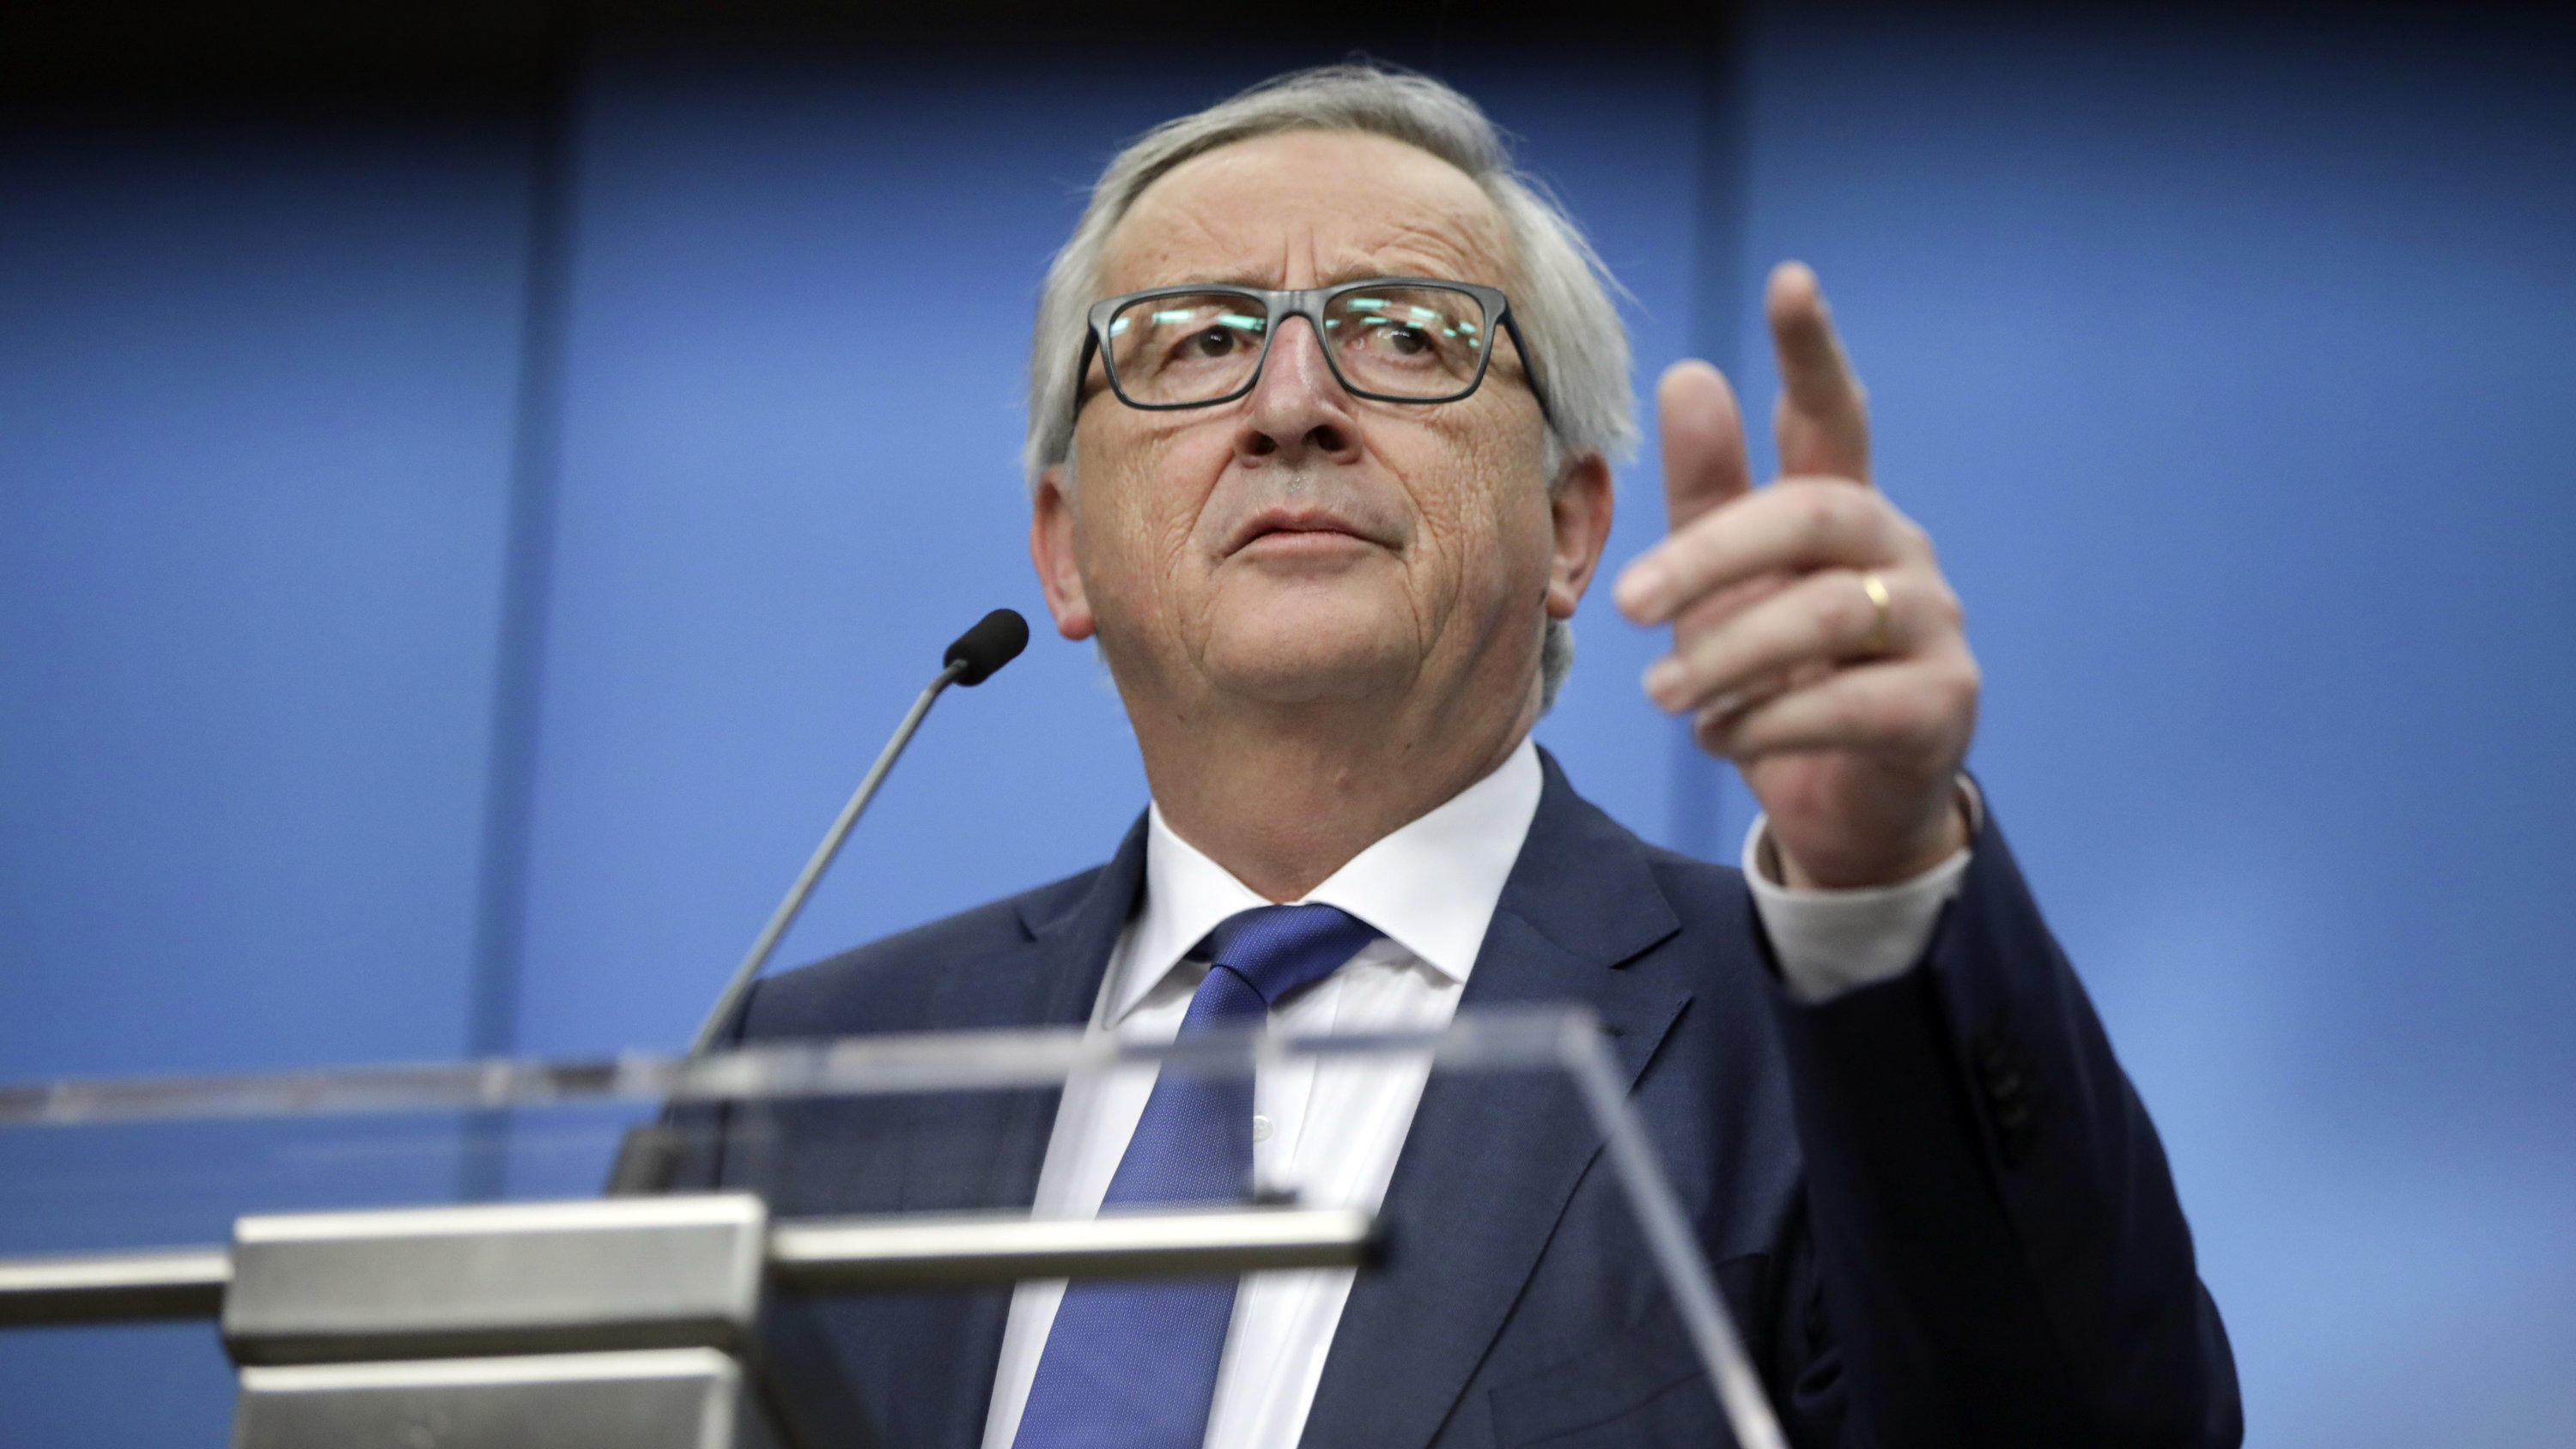 ARCHIV - 23.03.2018, Belgien, Brüssel: EU-Kommissionspräsident Jean-Claude Juncker  spricht bei einer Pressekonferenz. Der Handelsstreit zwischen den USA und den Europäern droht trotz monatelanger Verhandlungen zu eskalieren. Die Trump-Regierung mach